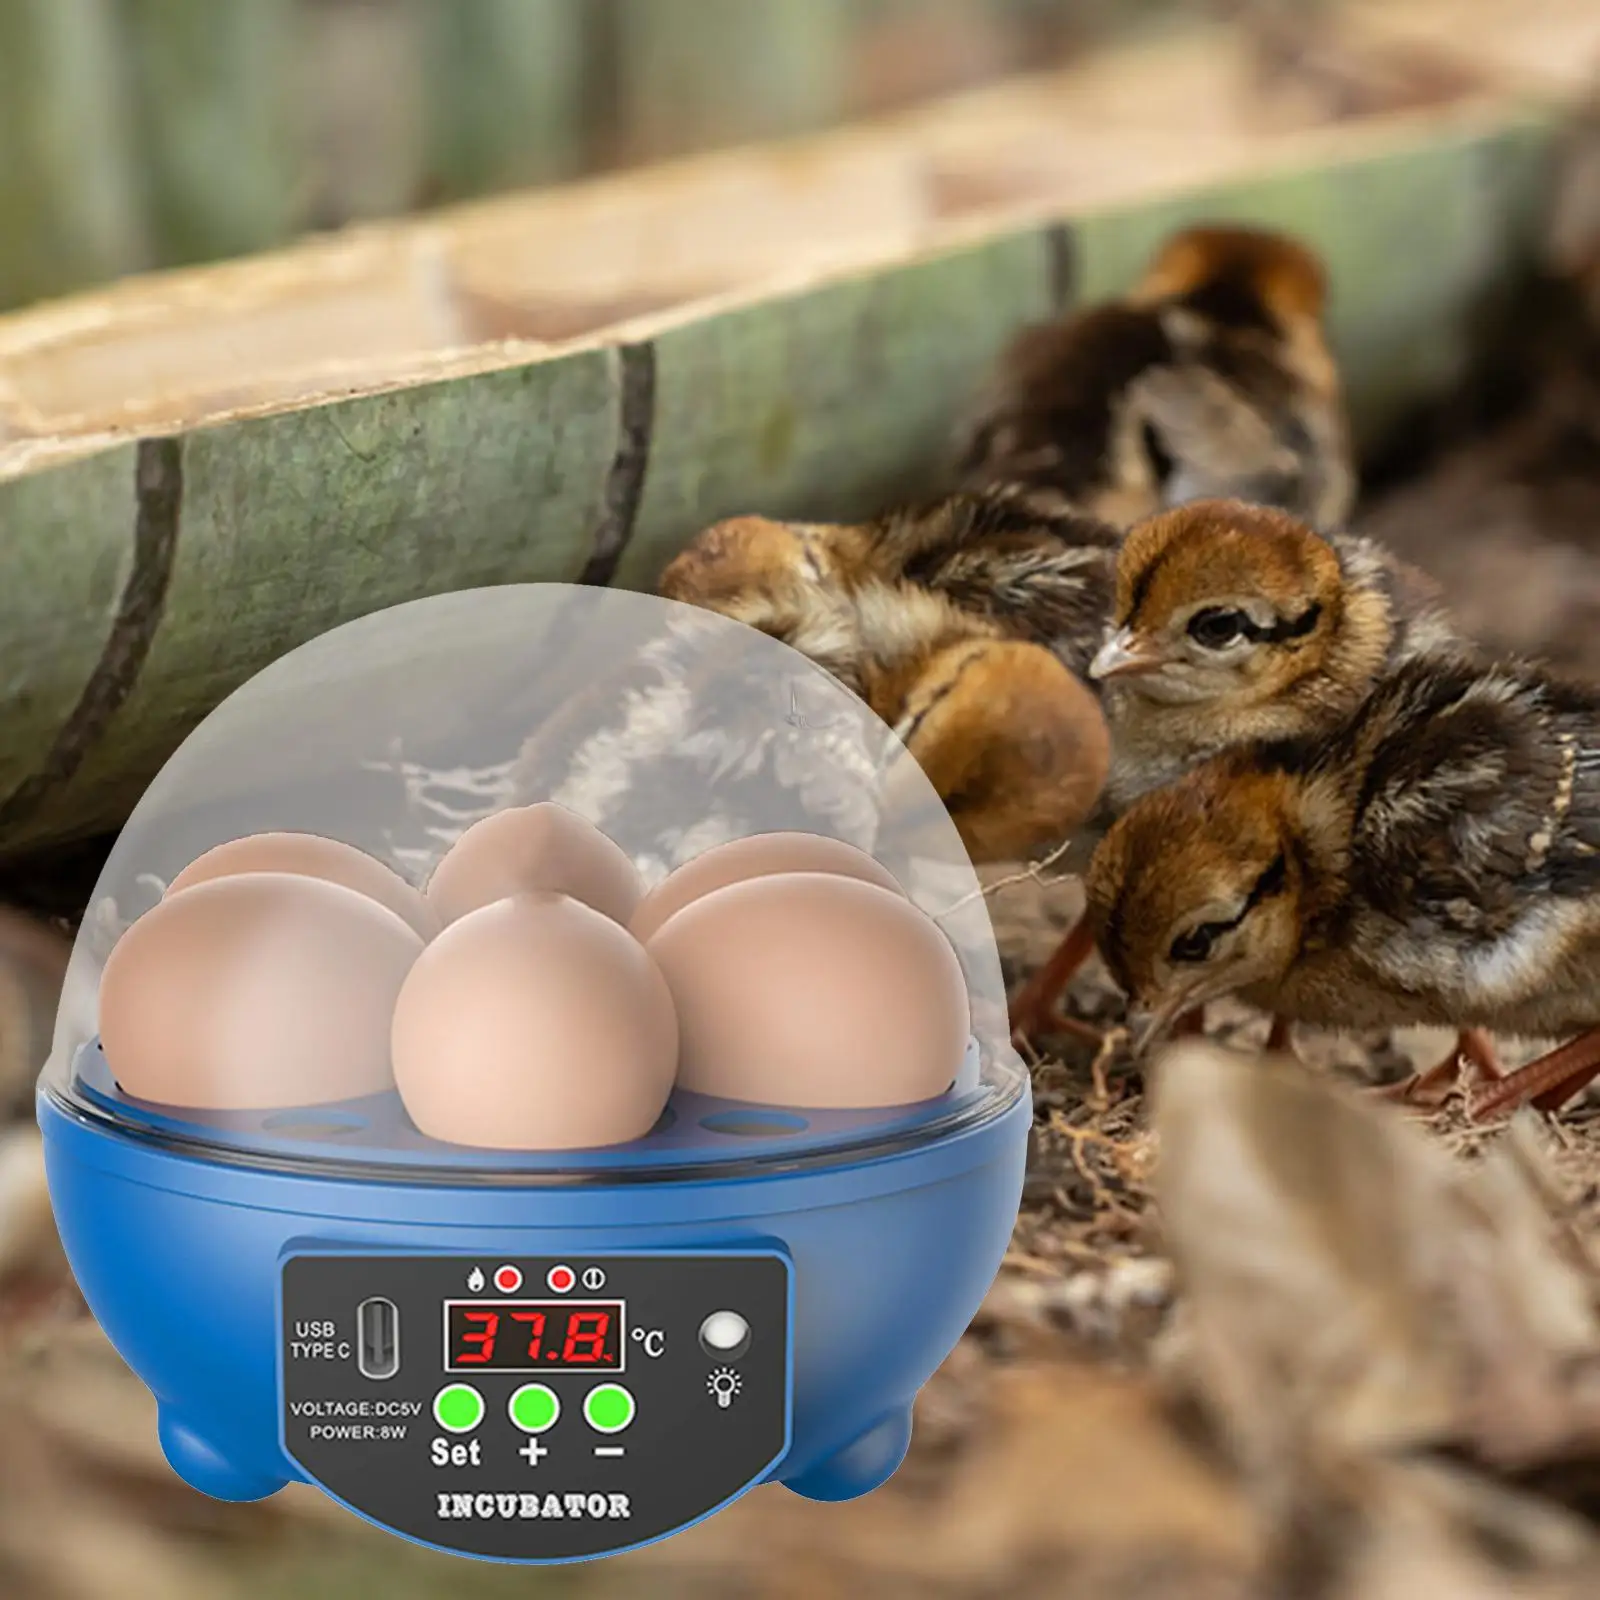 Egg Incubator Automatic Intelligent LED Display Hatcher Machine for Quail